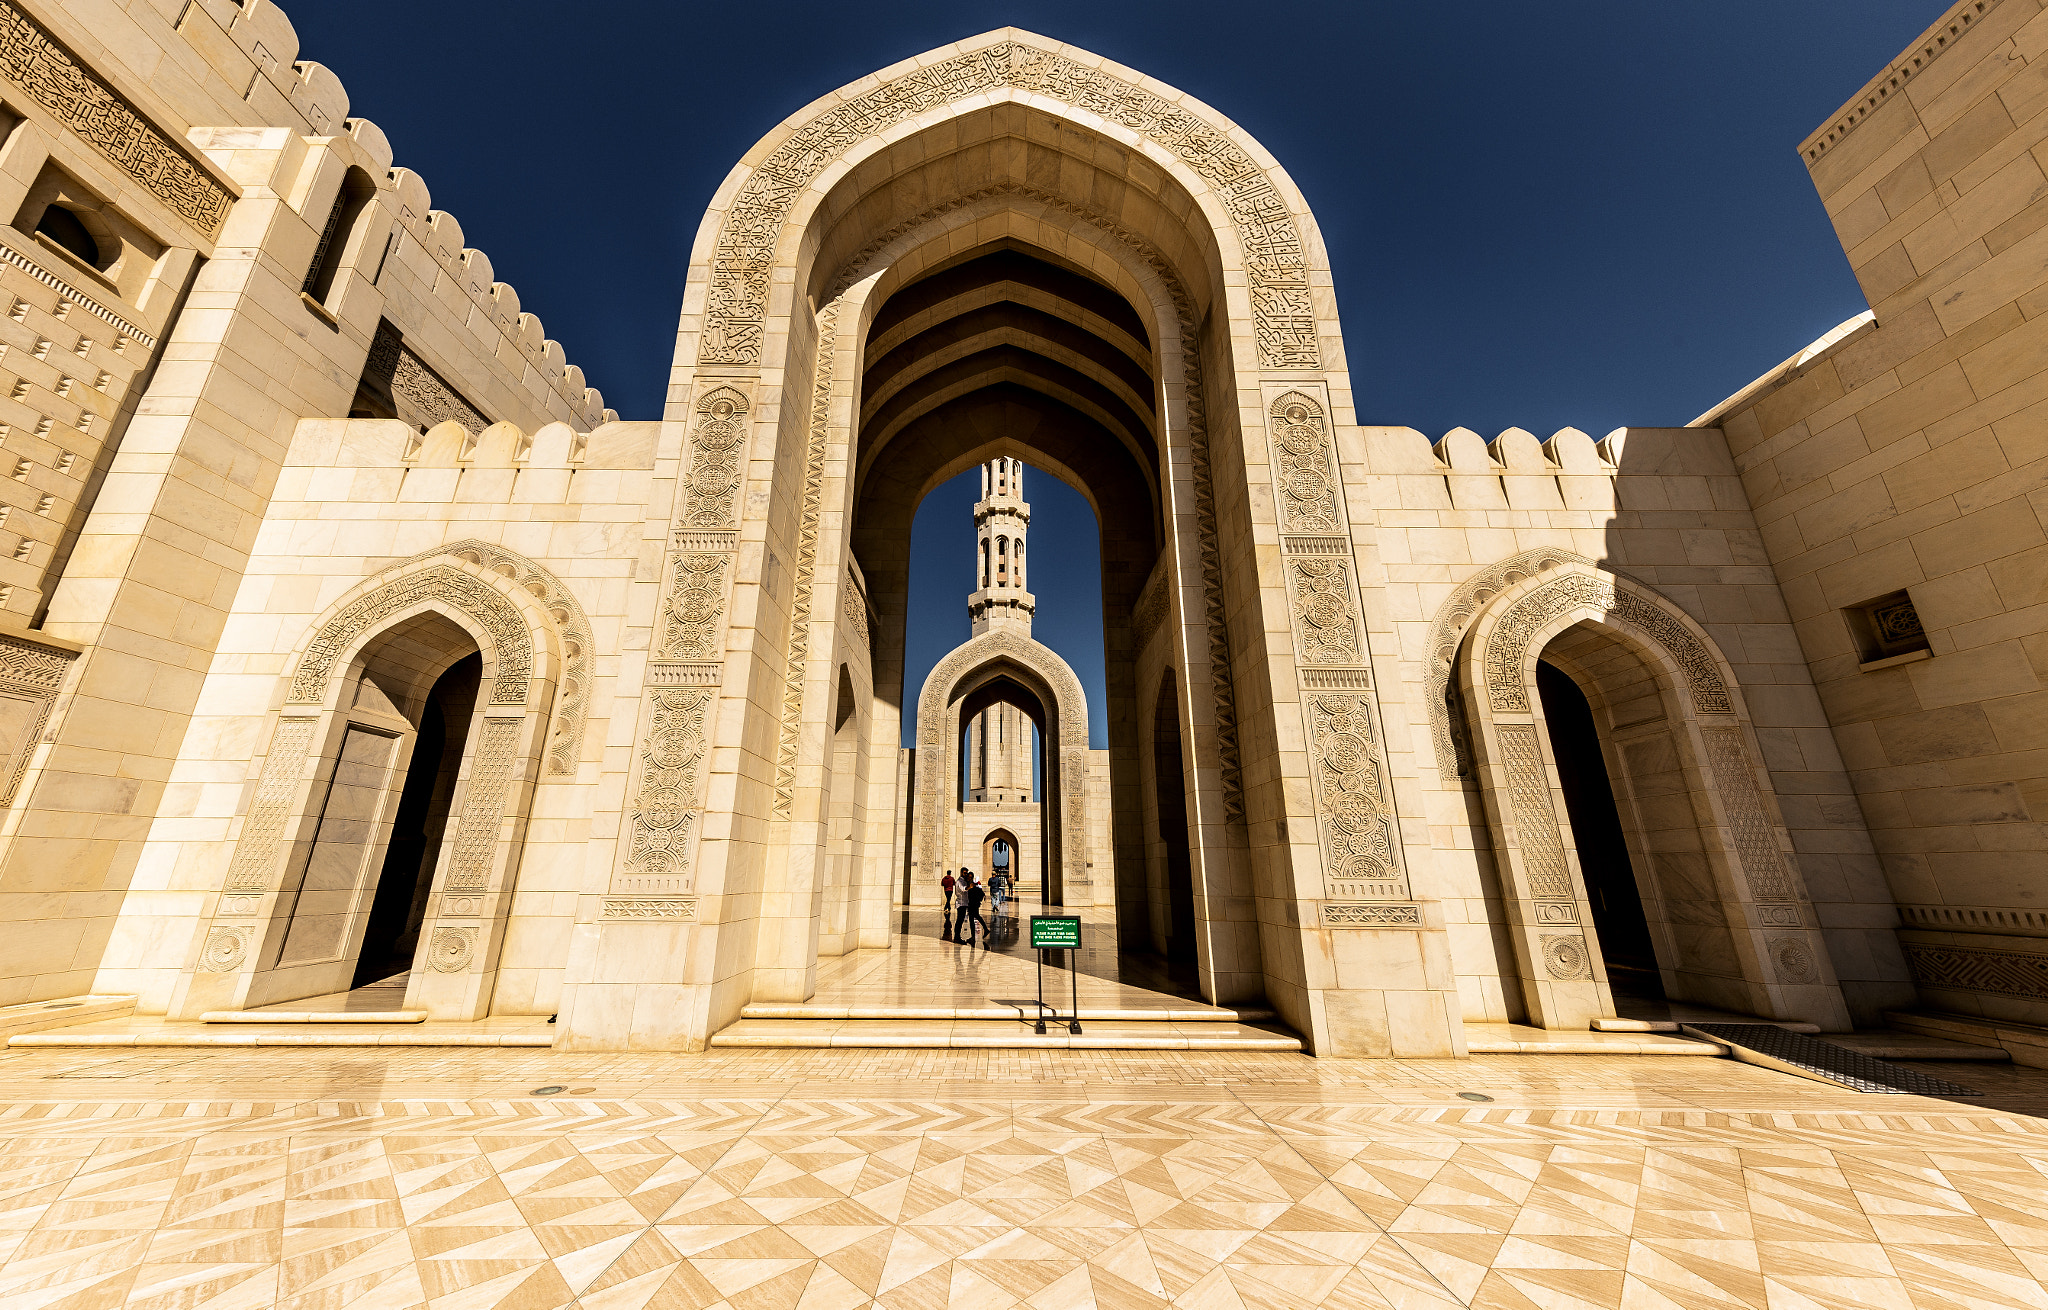 Canon EOS 6D sample photo. The sultan qaboos grand mosque no 6 photography